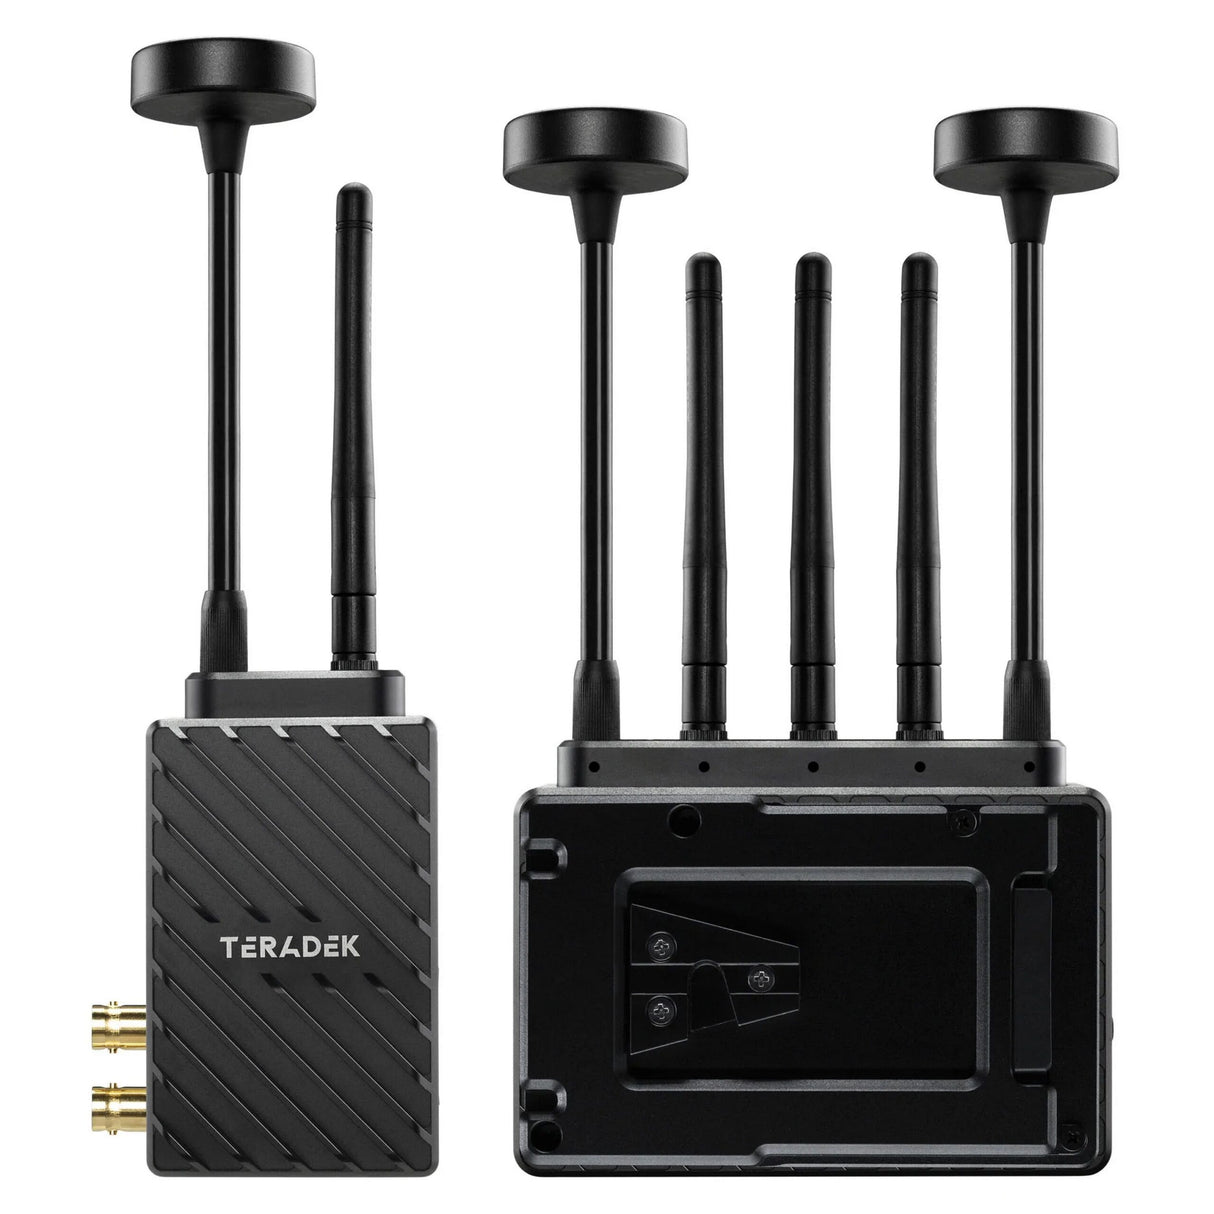 Teradek 10-2280-V Bolt 6 LT Max Wireless Video Transmitter/Receiver, V-Mount